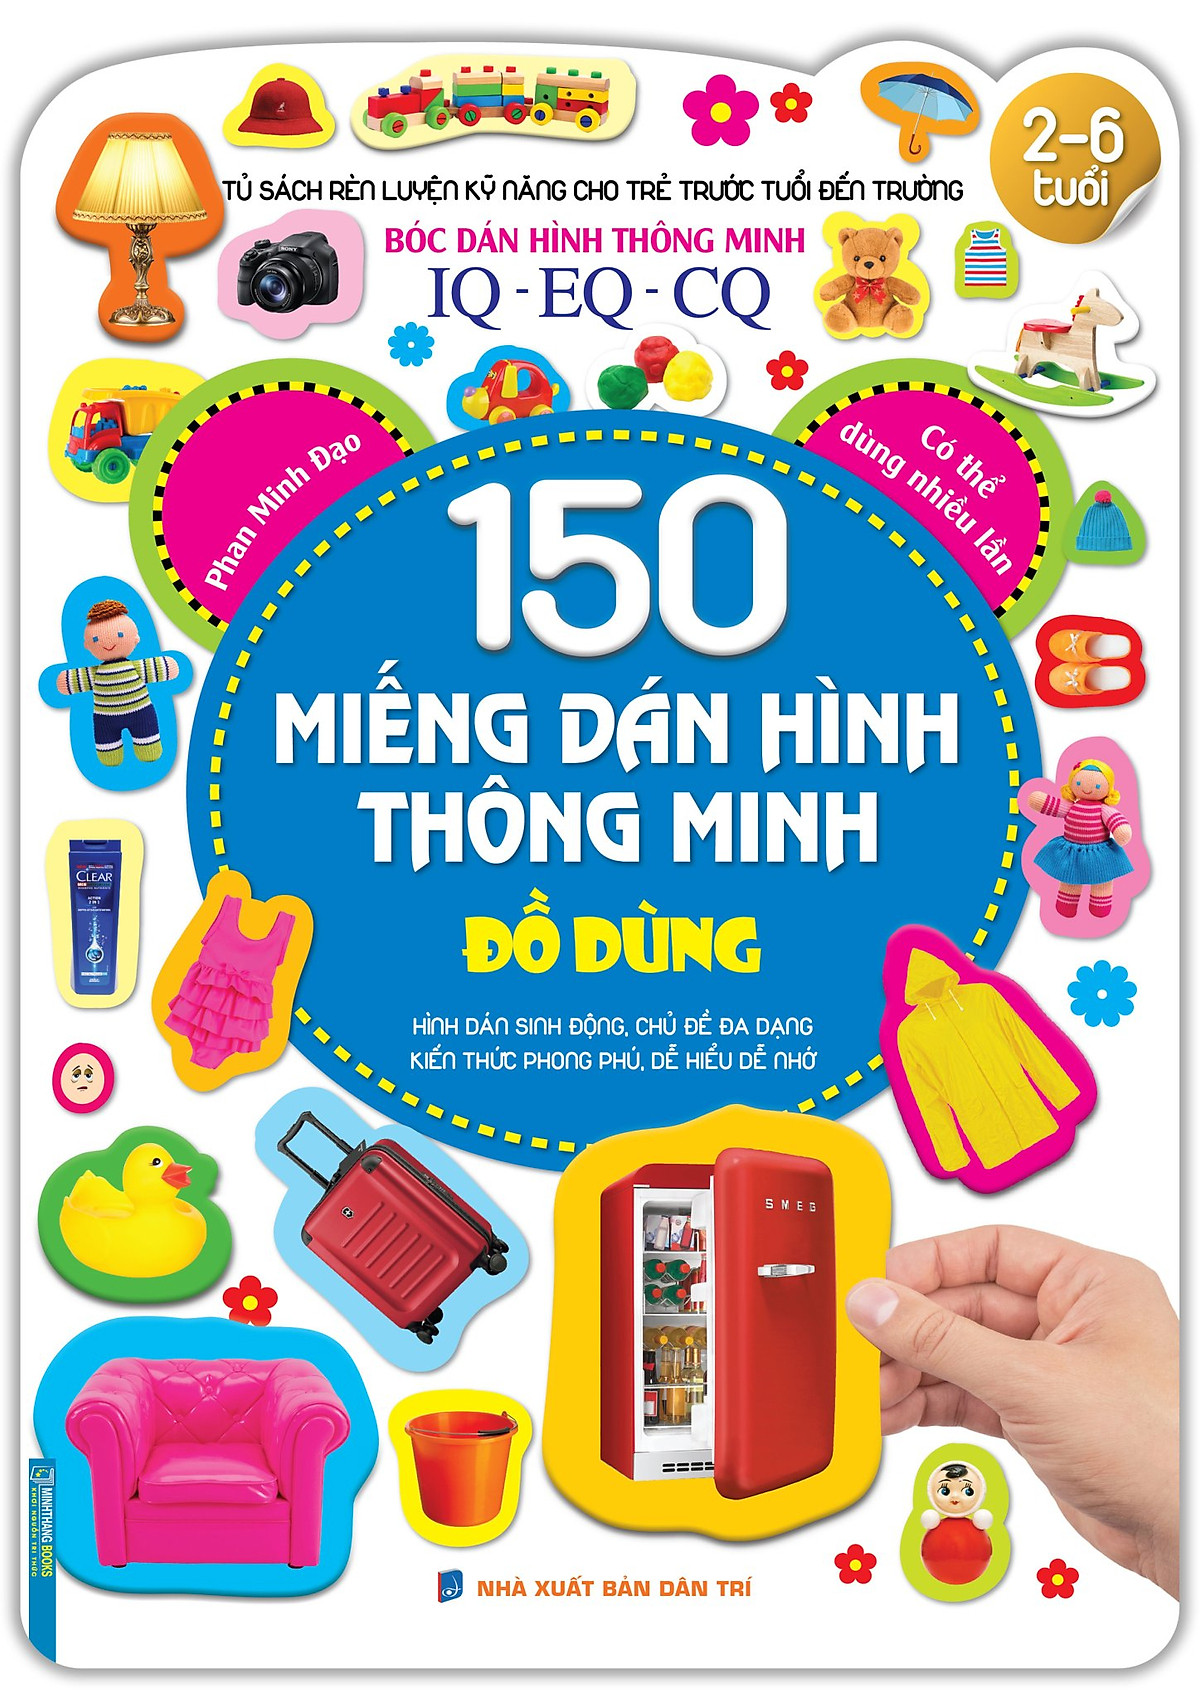 Tủ sách rèn luyện kỹ năng cho trẻ trước tuổi đến trường (2-6 tuổi) Bóc dán hình thông minh IQ-EQ-CQ 150 miếng dán hình thông minh - Đồ dùng (tái bản)